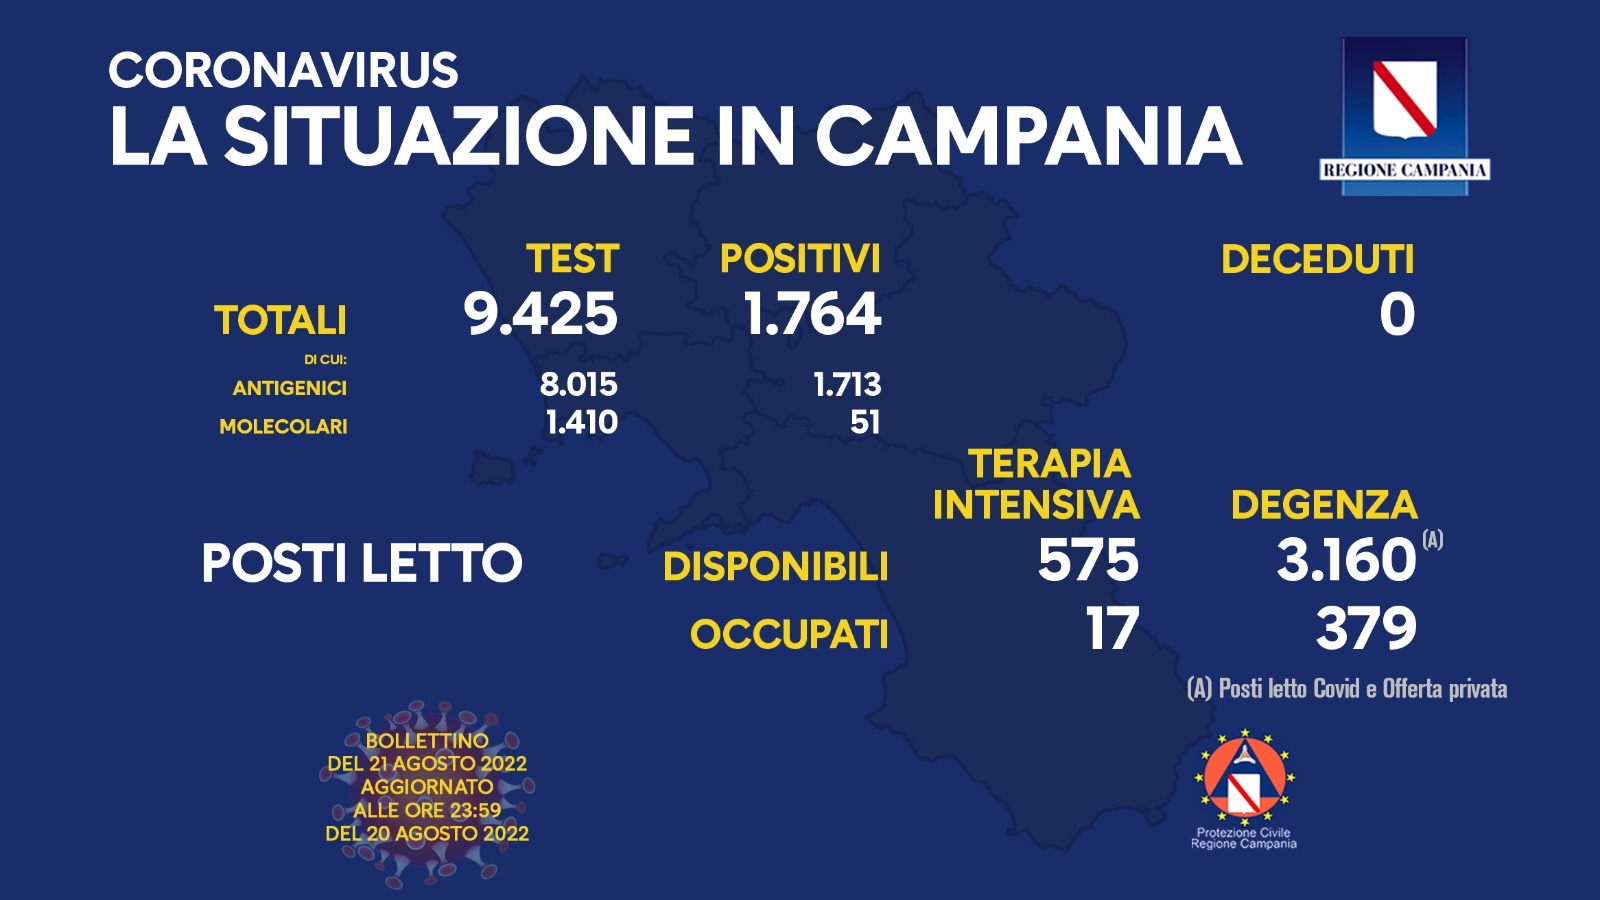 Regione Campania: Coronavirus, Unità di Crisi, Bollettino,1764 casi positivi, 0 decessi